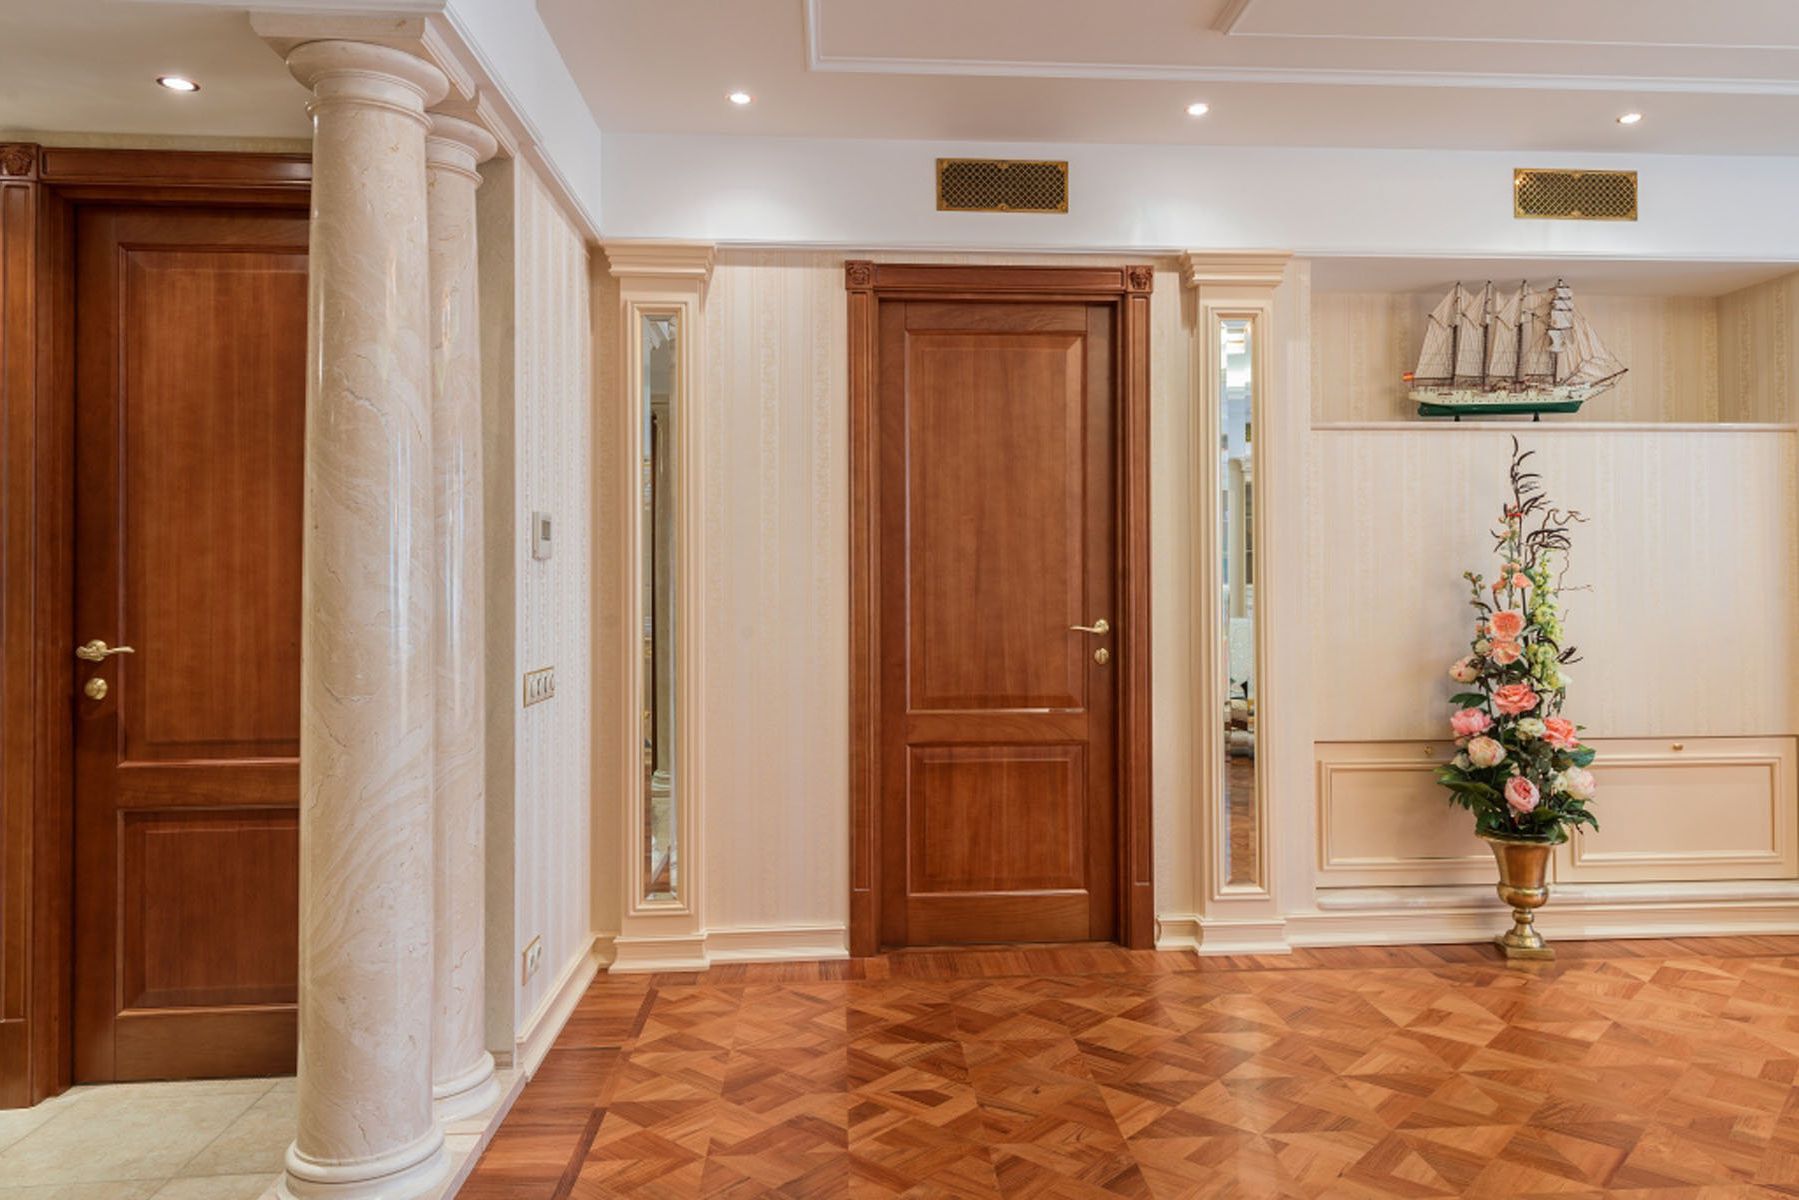 The massive door of solid wood in a classic room design